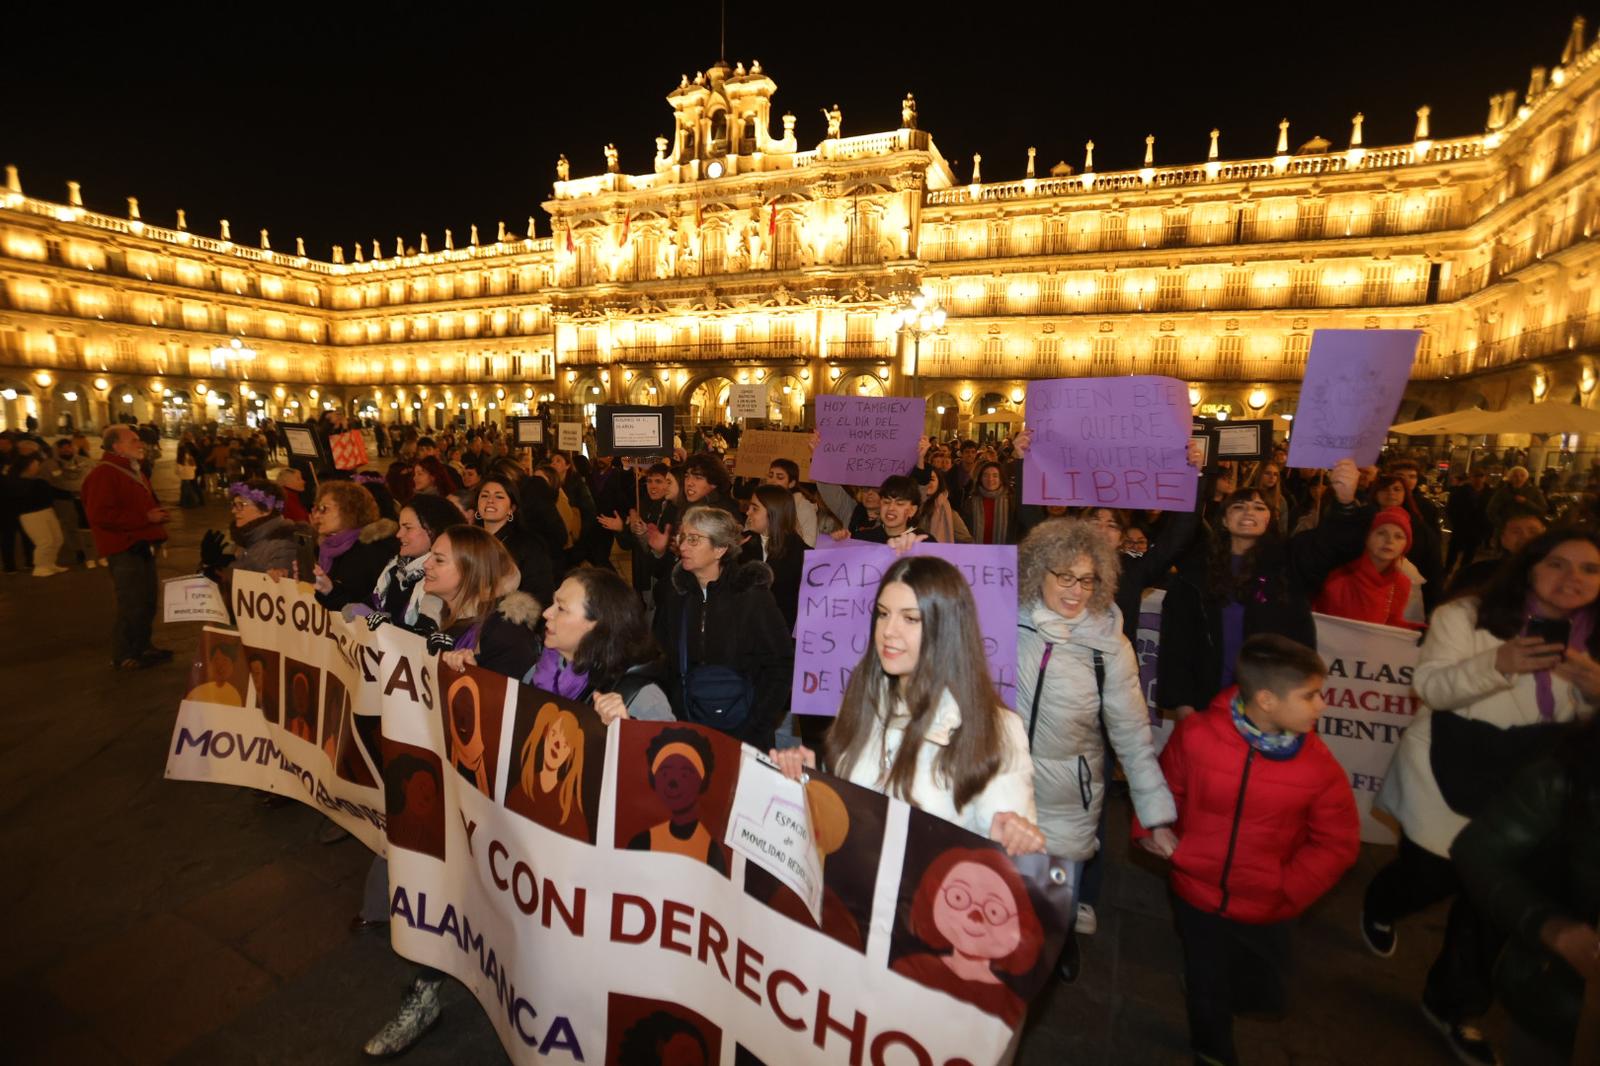 Salamanca clama contra la violencia de género